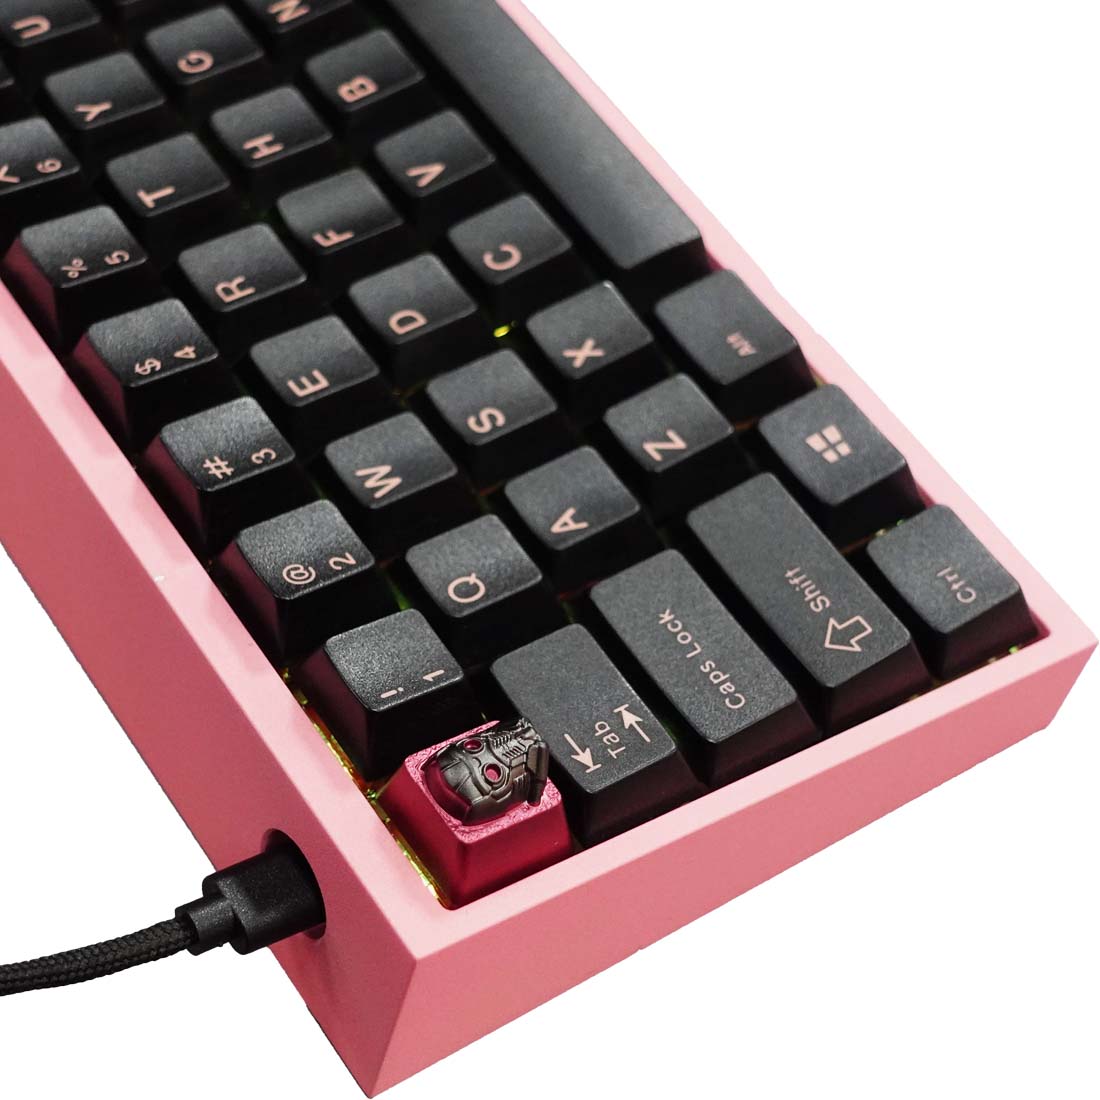 Pre-Build Keyboard | لوحة مفاتيح مجهزة - Store 974 | ستور ٩٧٤